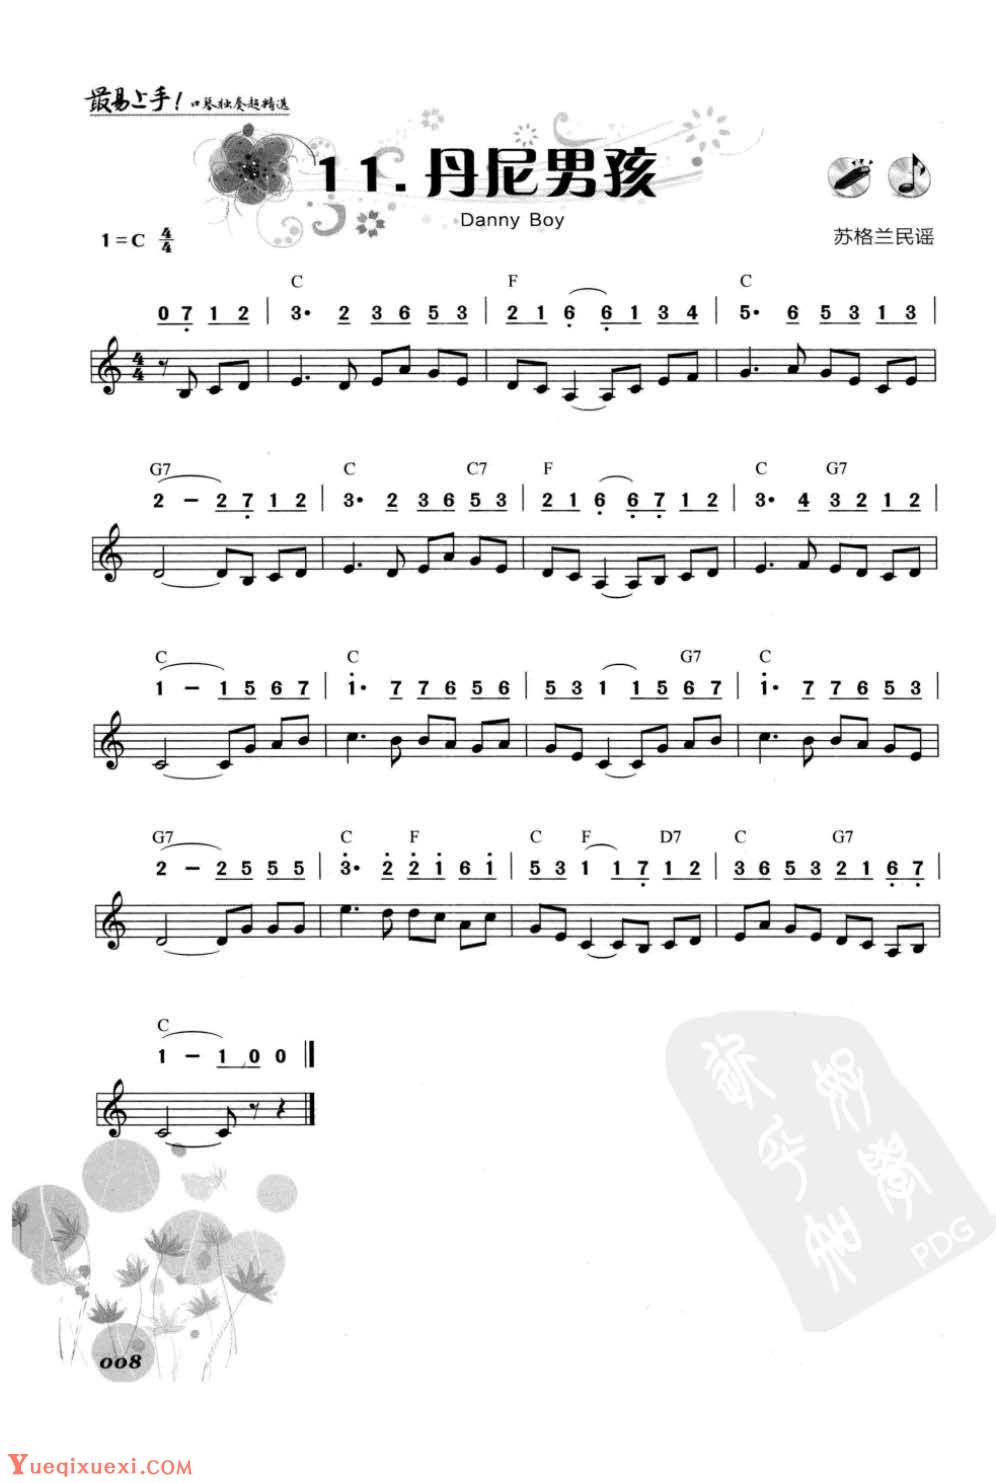 口琴初学者乐曲《丹尼男孩》简谱与五线谱对照